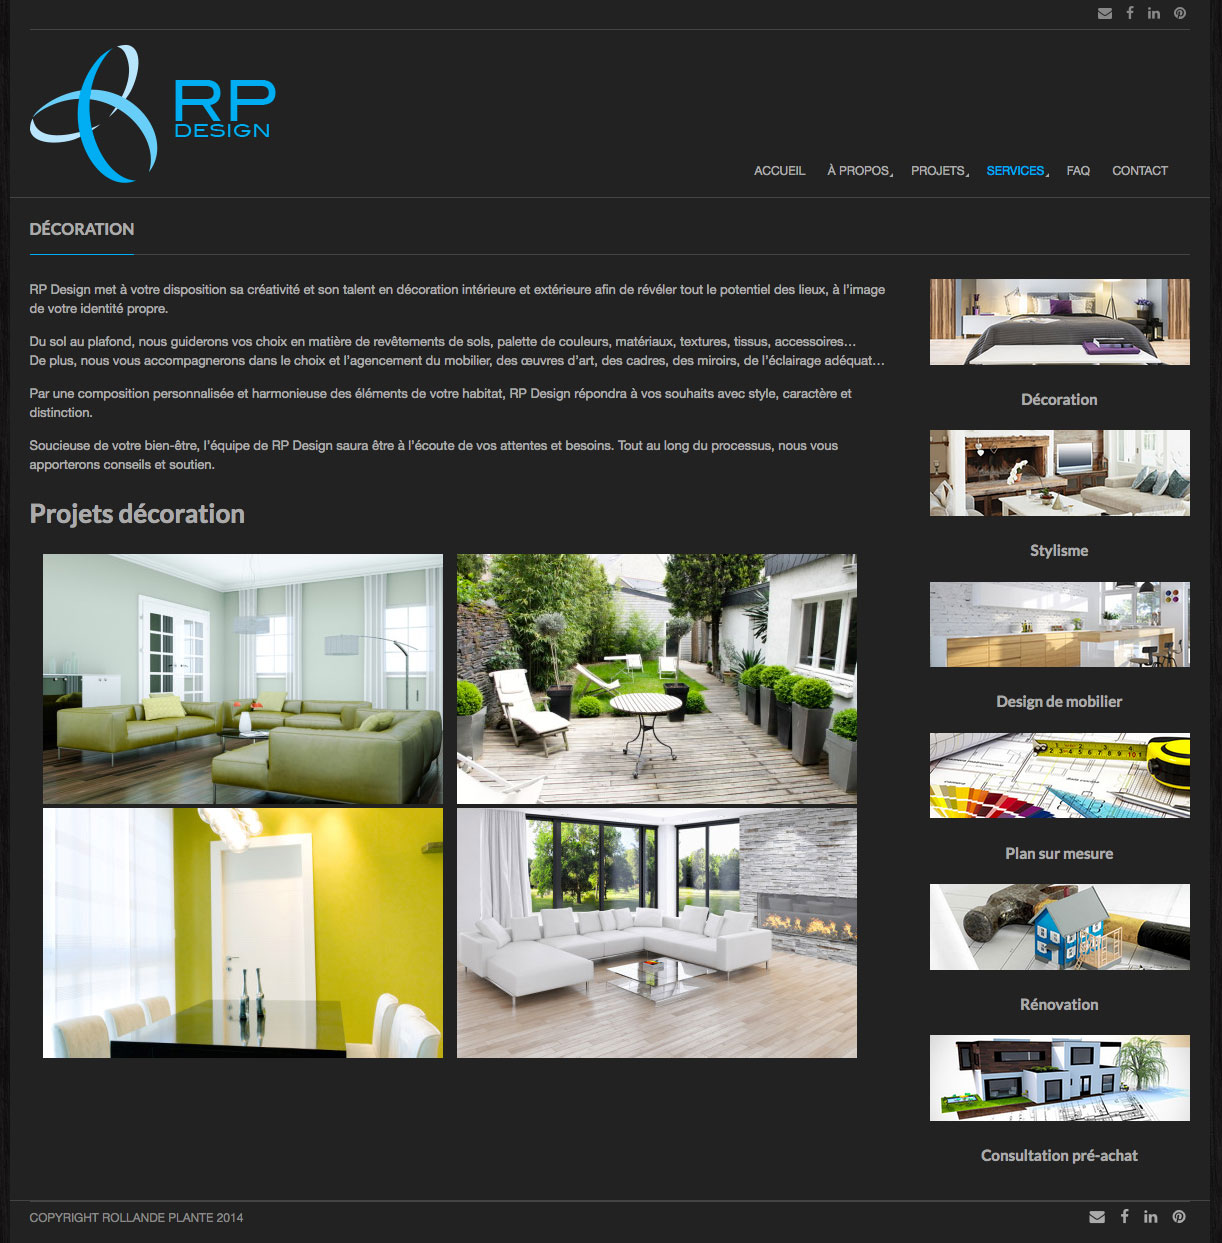 Agitatrice de solutions - Projet RP Design - Branding - Communication - Site Web - Page destination